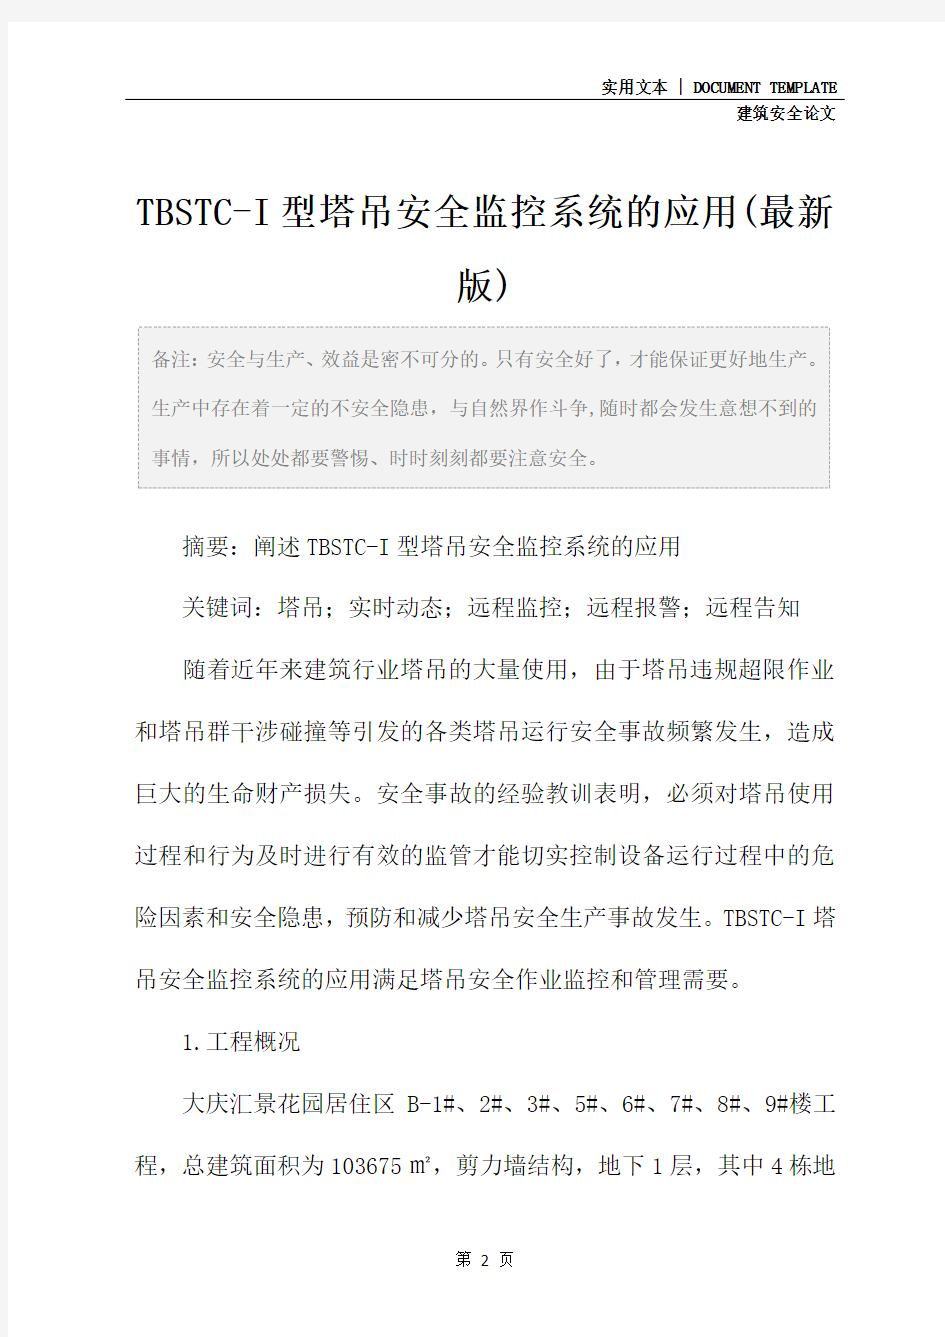 TBSTC-I型塔吊安全监控系统的应用(最新版)